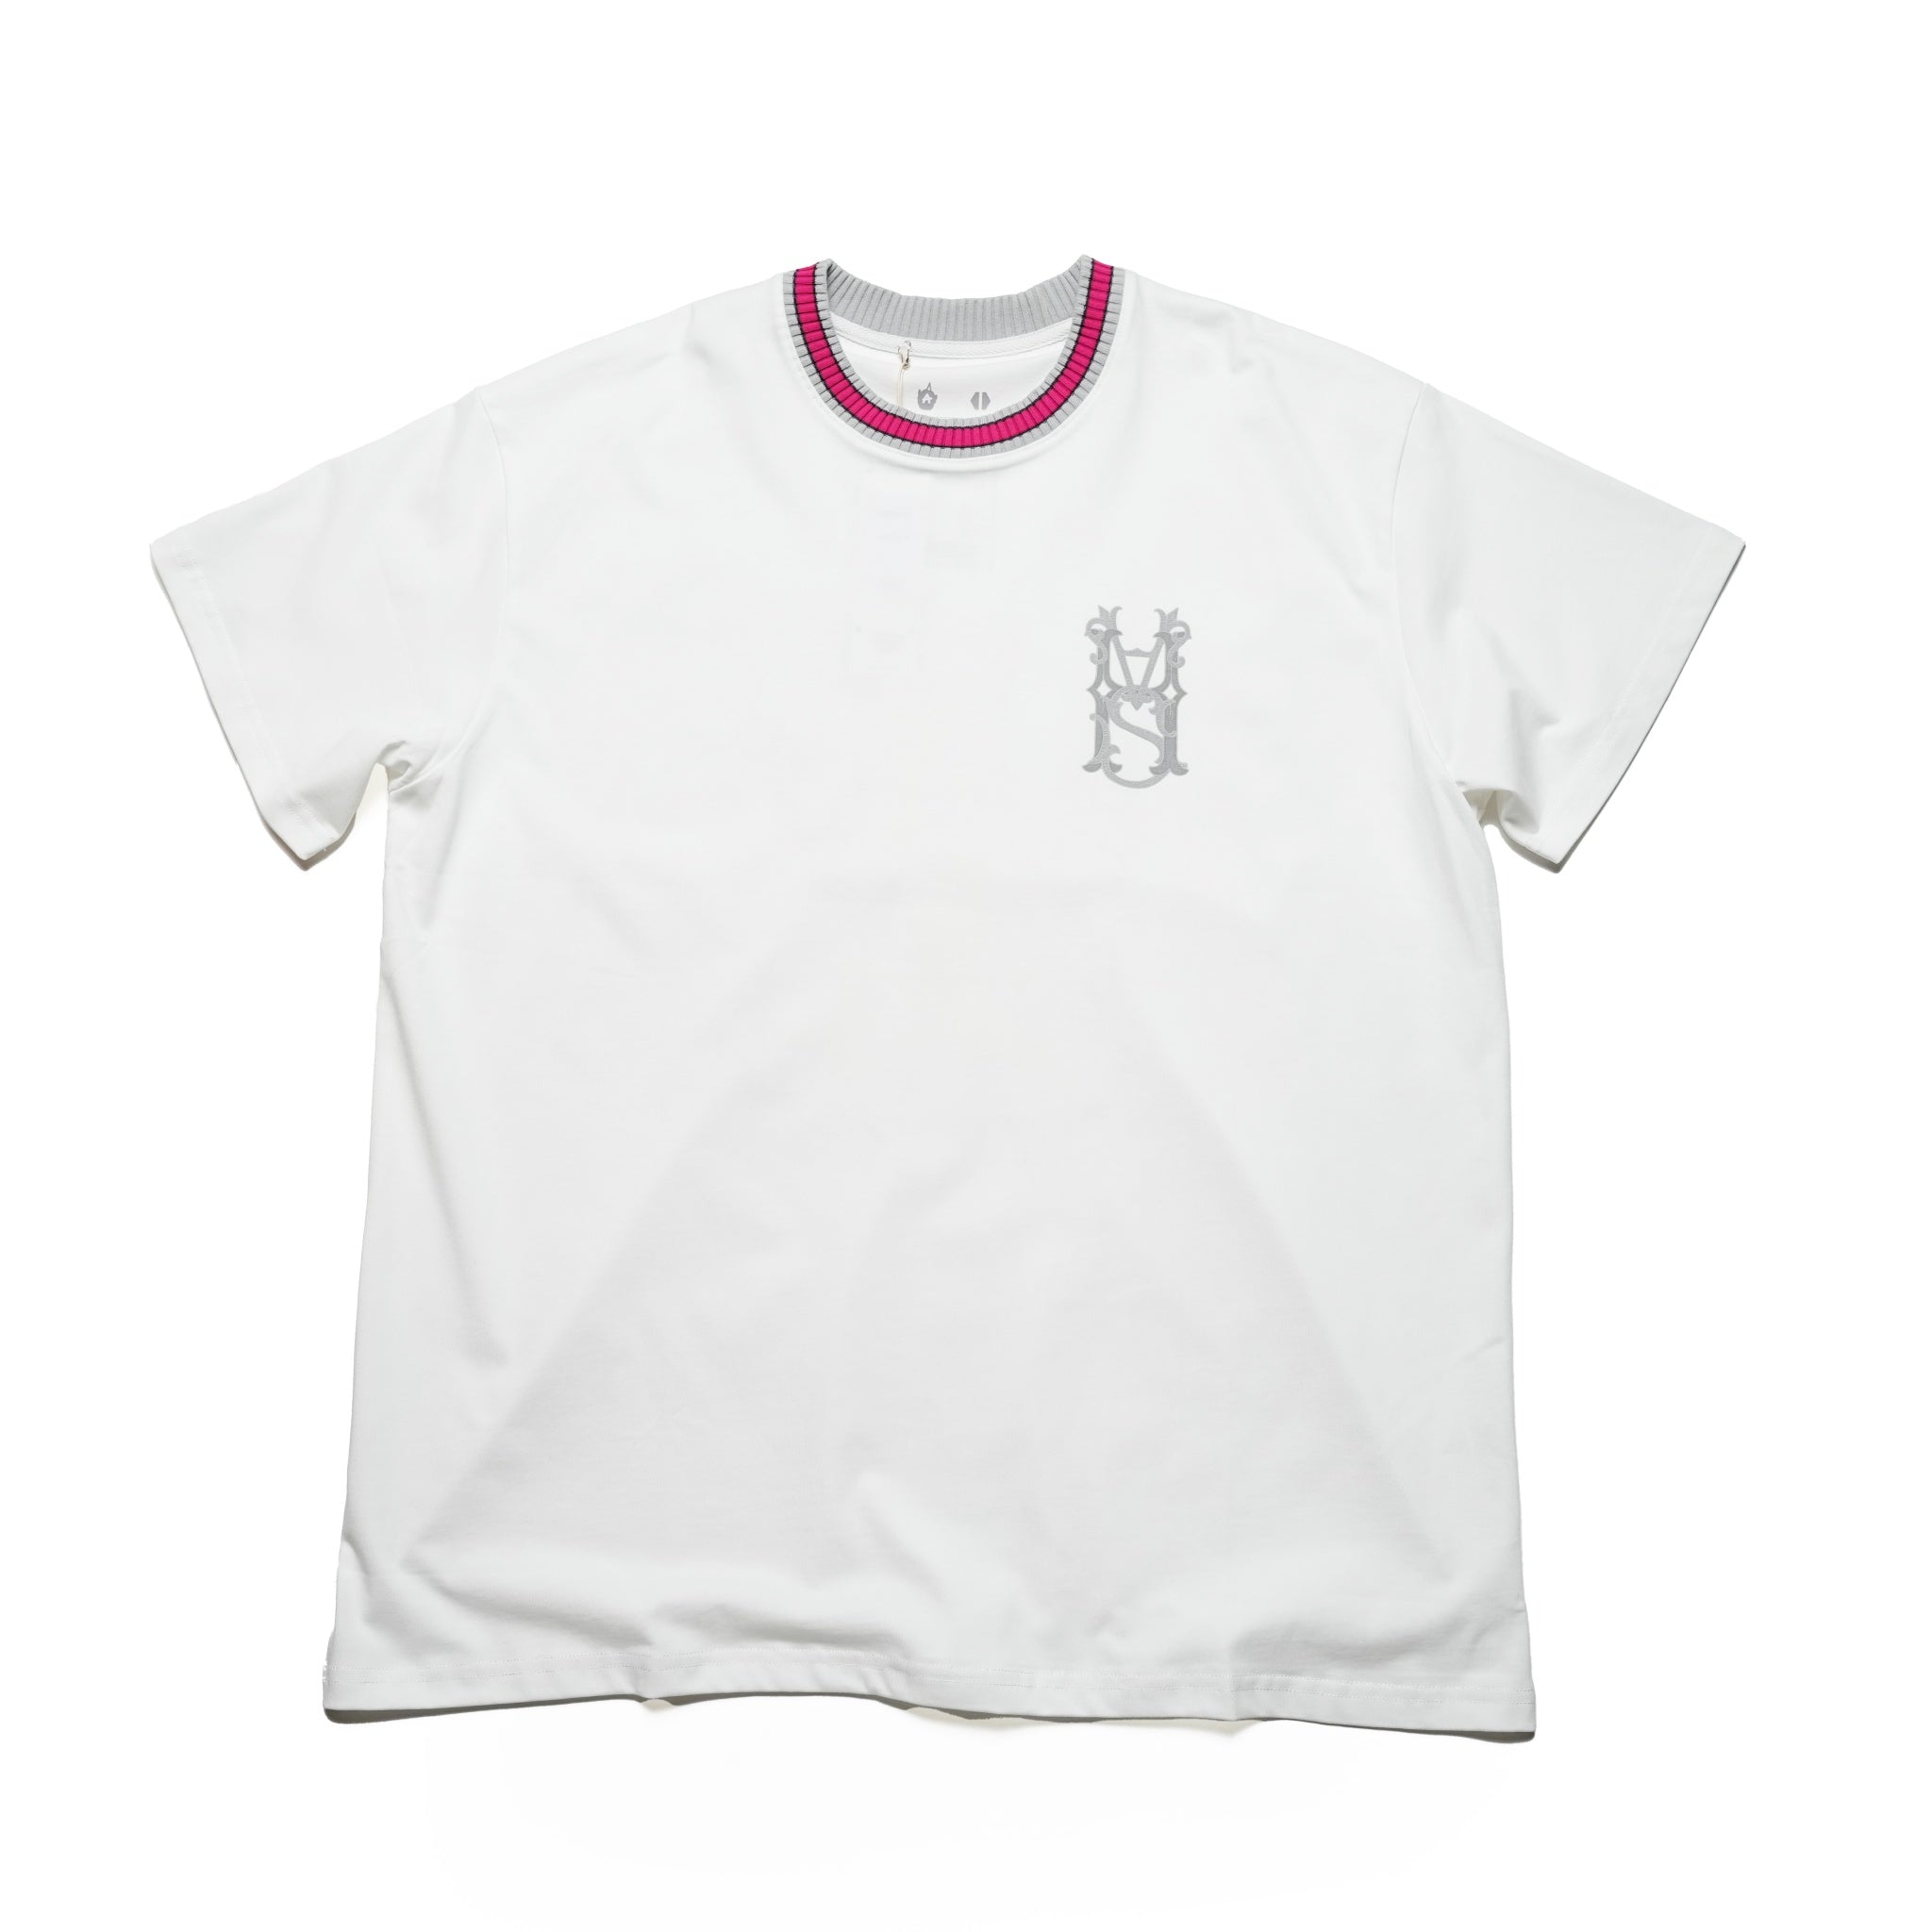 No:SEI×ACR-H-T01 | Name:Seivson x (A)crypsis® HAS Memorial T-Shirt - White 【SEIVSON_セイブソン】 【A)crypsis®】